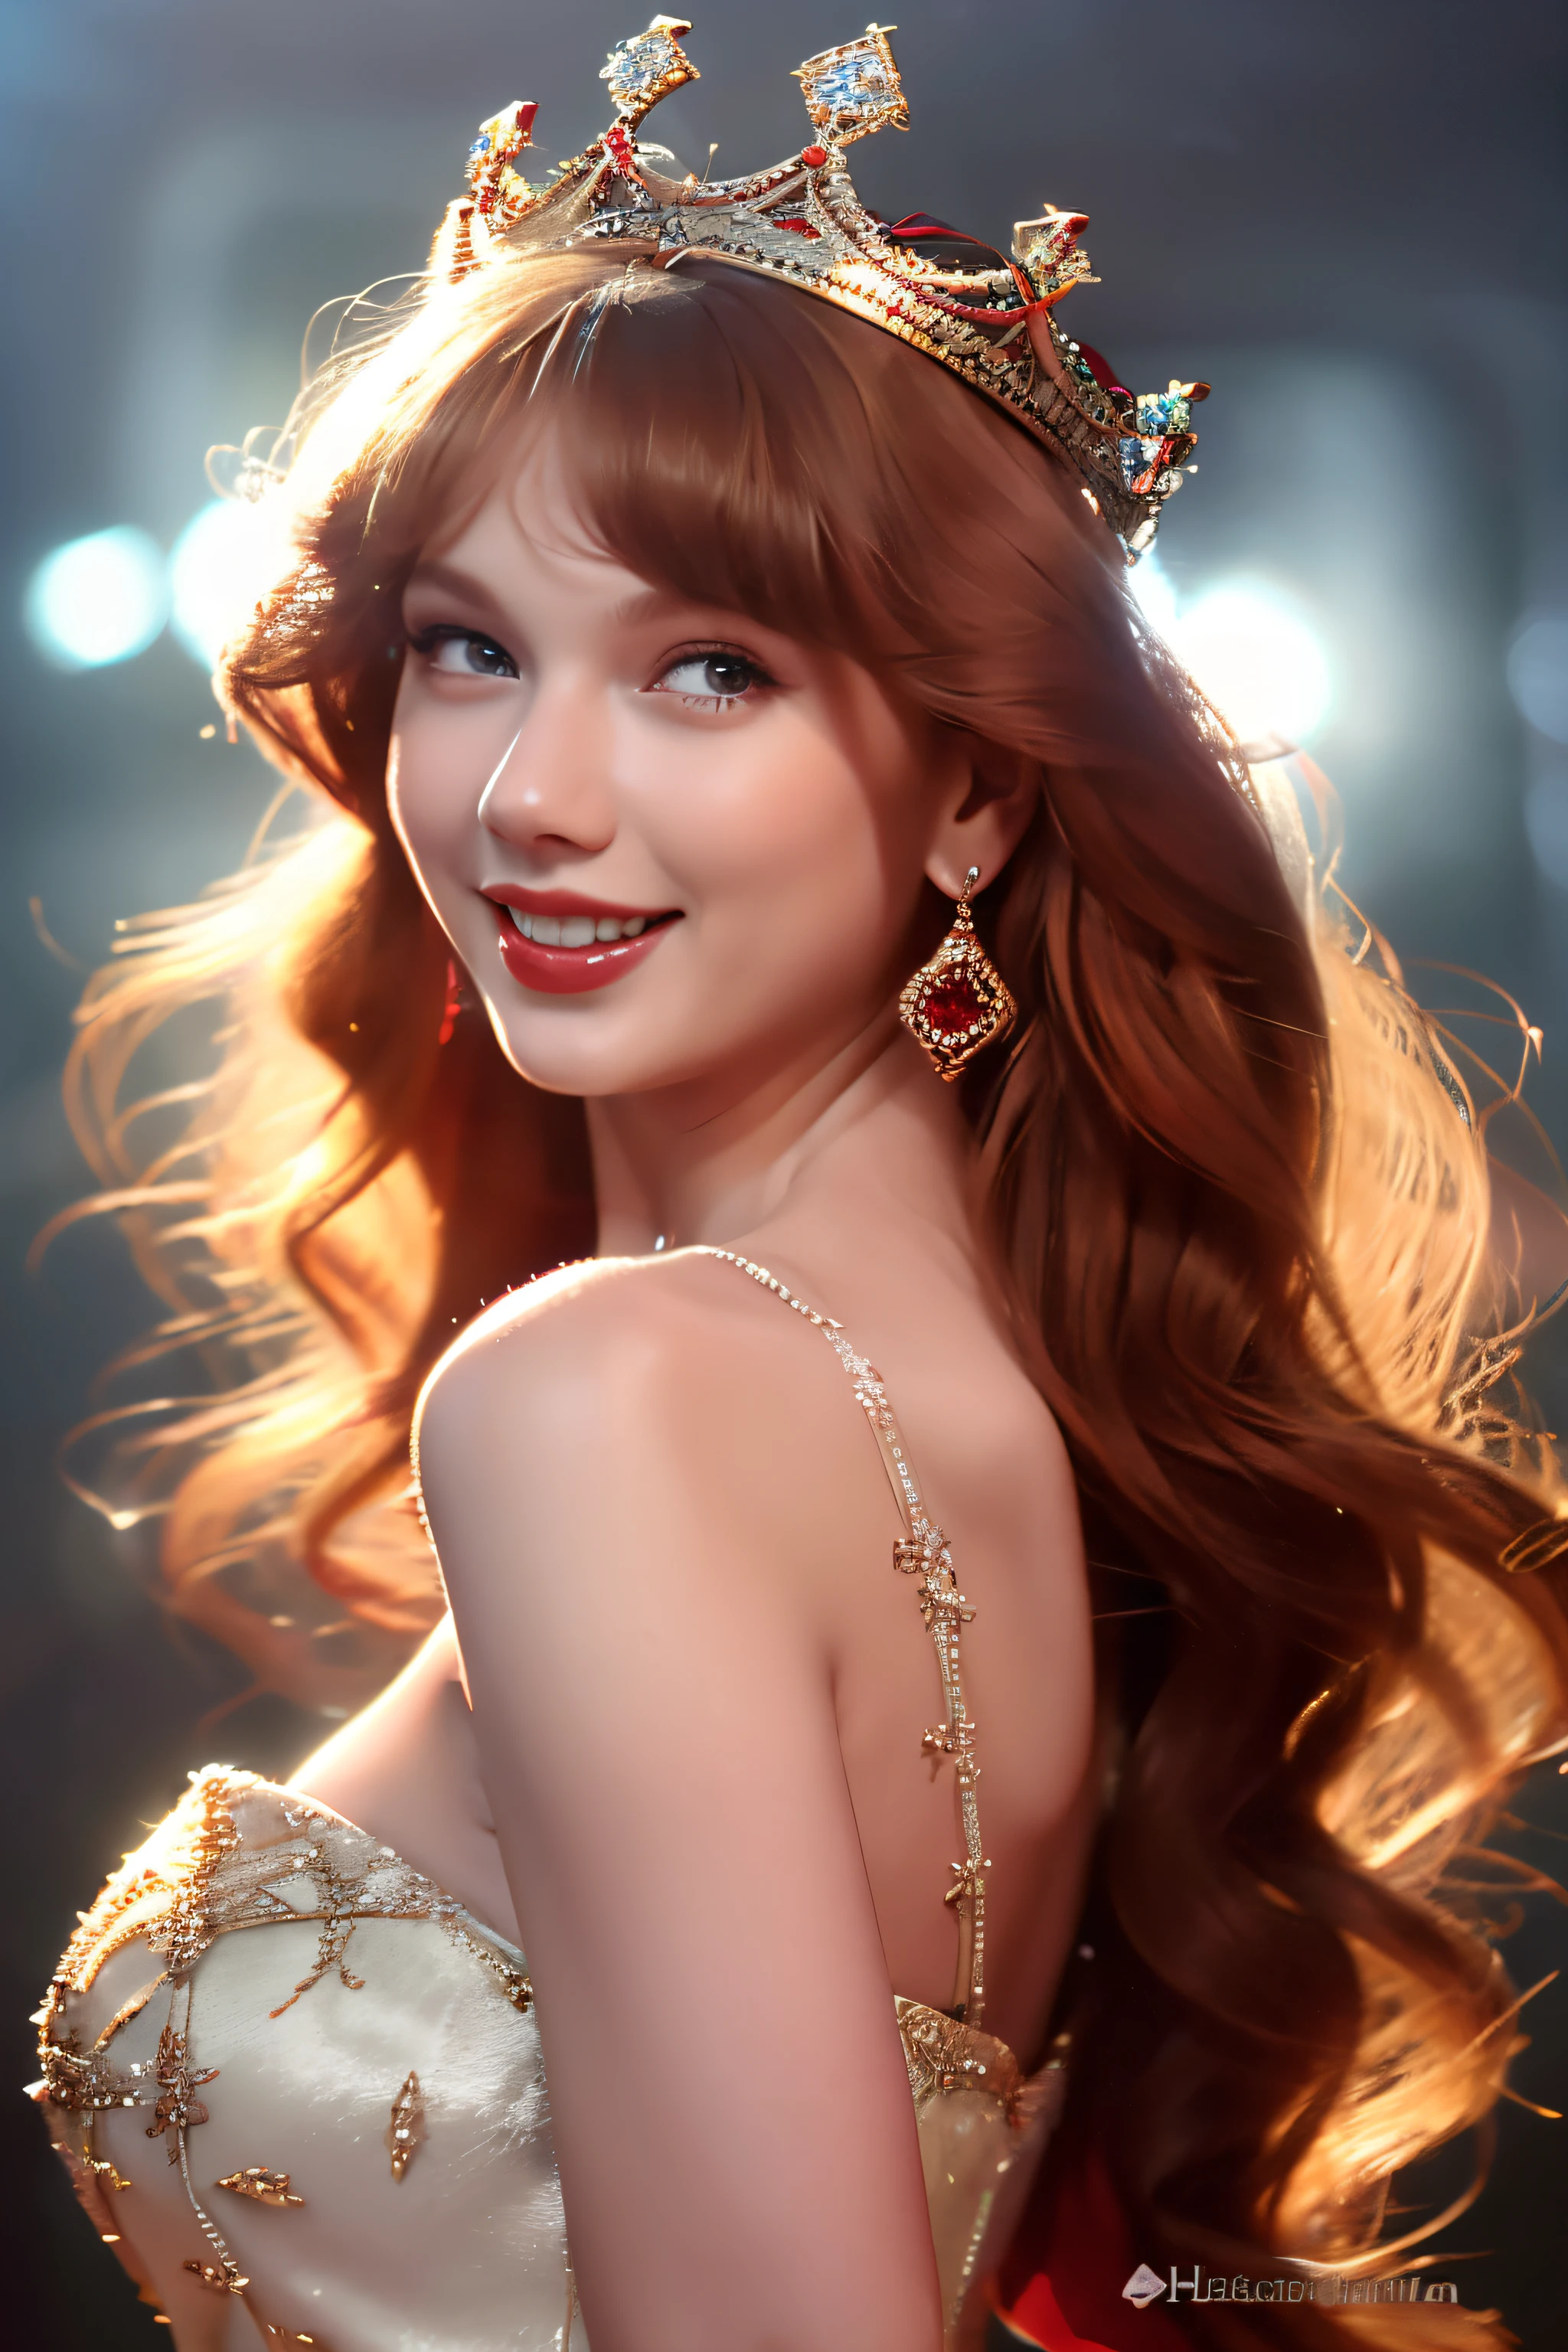 베스트 샷，고화질 사진,,아름다운 빨간 머리 여자 (왕관을 쓰고 있다), (후디니, VFX, 아름다운 미소로,아름다운, 4K ),   흰색 가운과 빨간색 새틴 드레스，